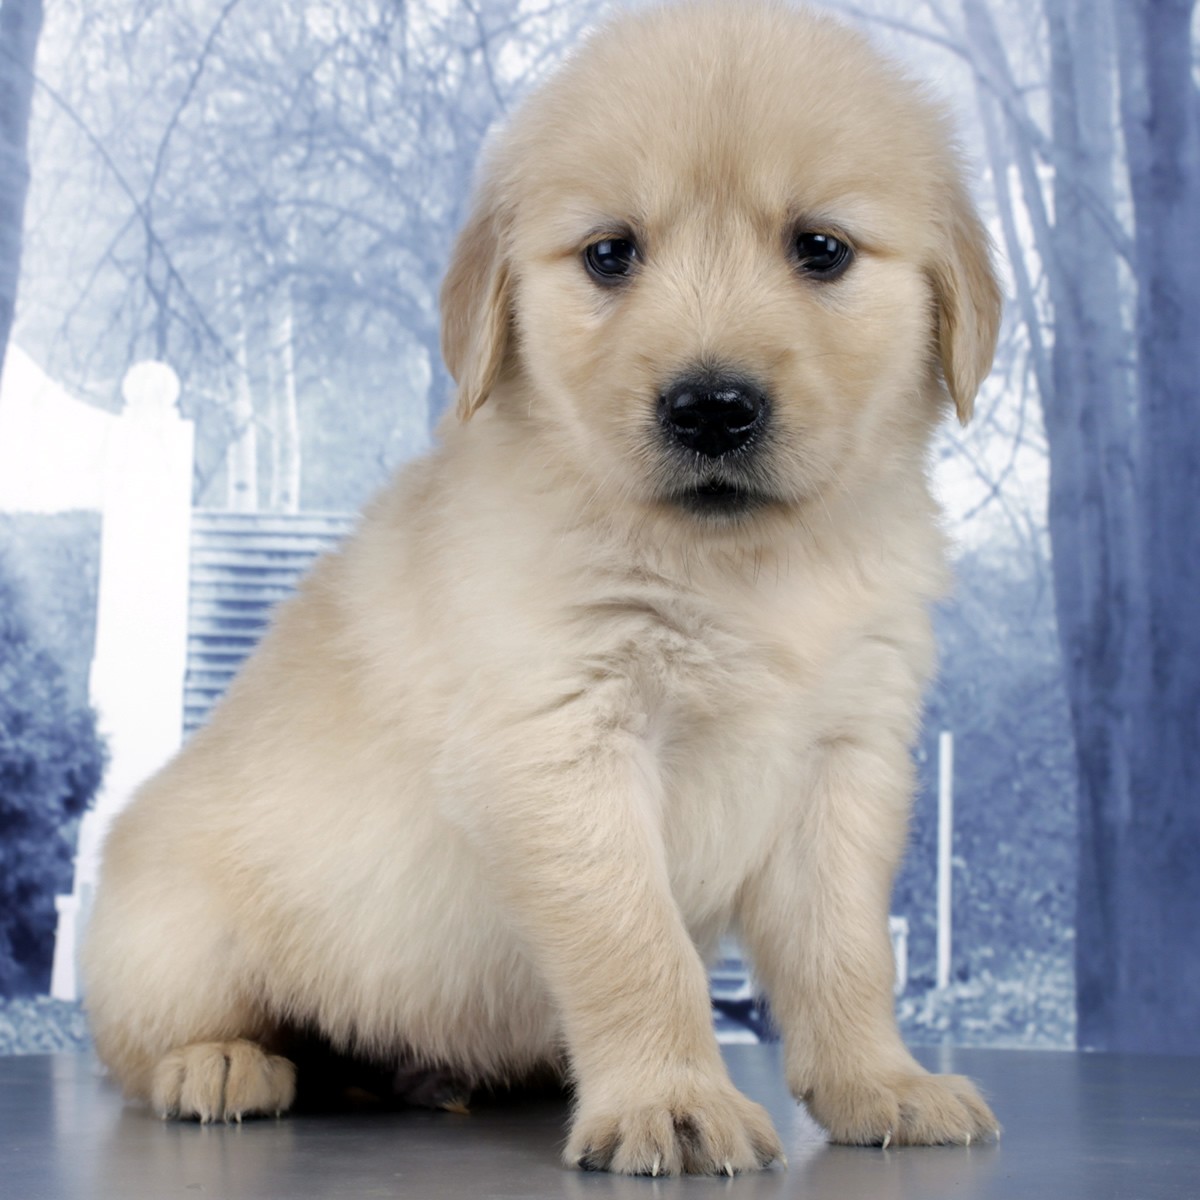 纯种金毛幼犬狗狗出售 宠物金毛犬可支付宝交易【宝贝它】 金毛犬 /编号10115802 - 宝贝它